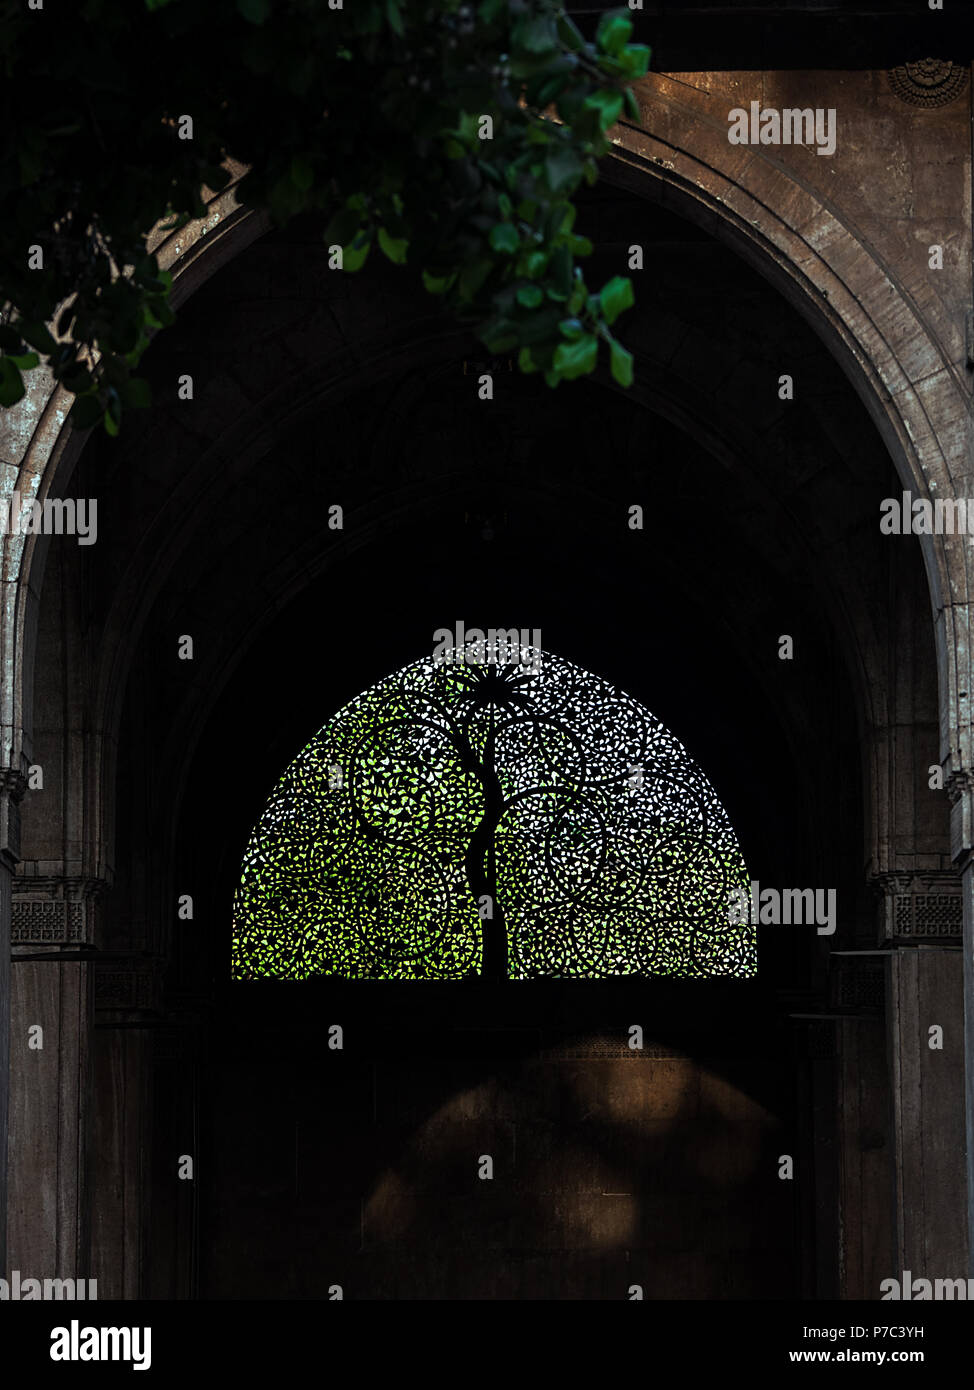 Berühmte Sidi Saiyyed Moschee jali-stein Gitterkonstruktion windows in Ahmedabad - Weltkulturerbe Stadt von Gujarat, Indien mit Zweigen zum Rahmen hinzufügen Stockfoto